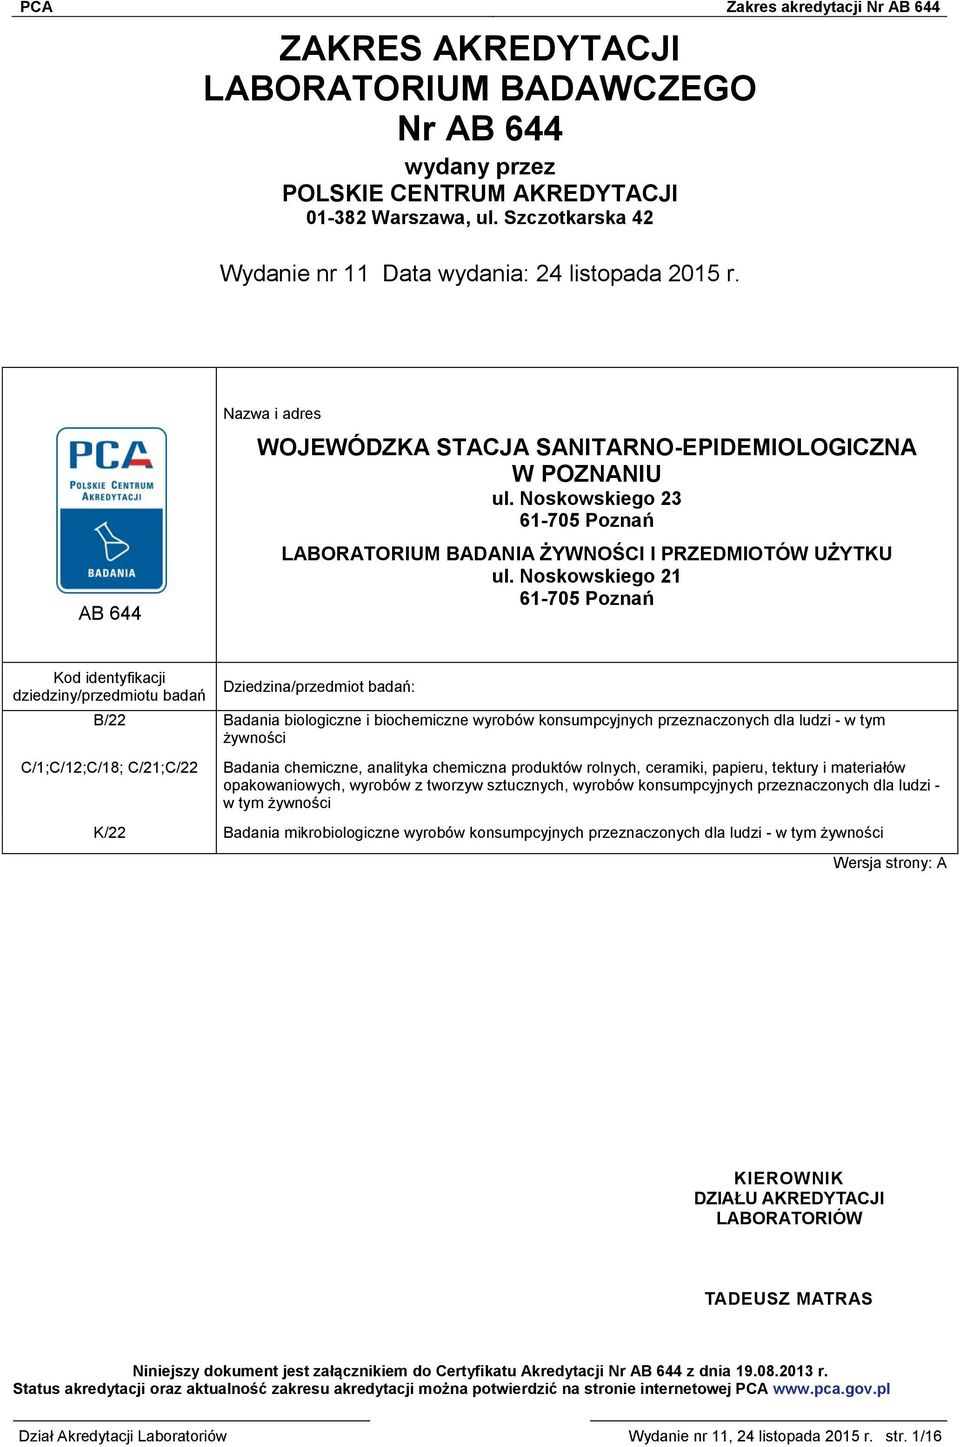 Noskowskiego 21 61-705 Poznań Kod identyfikacji dziedziny/przedmiotu badań Dziedzina/przedmiot badań: B/22 Badania biologiczne i biochemiczne wyrobów konsumpcyjnych przeznaczonych dla ludzi - w tym